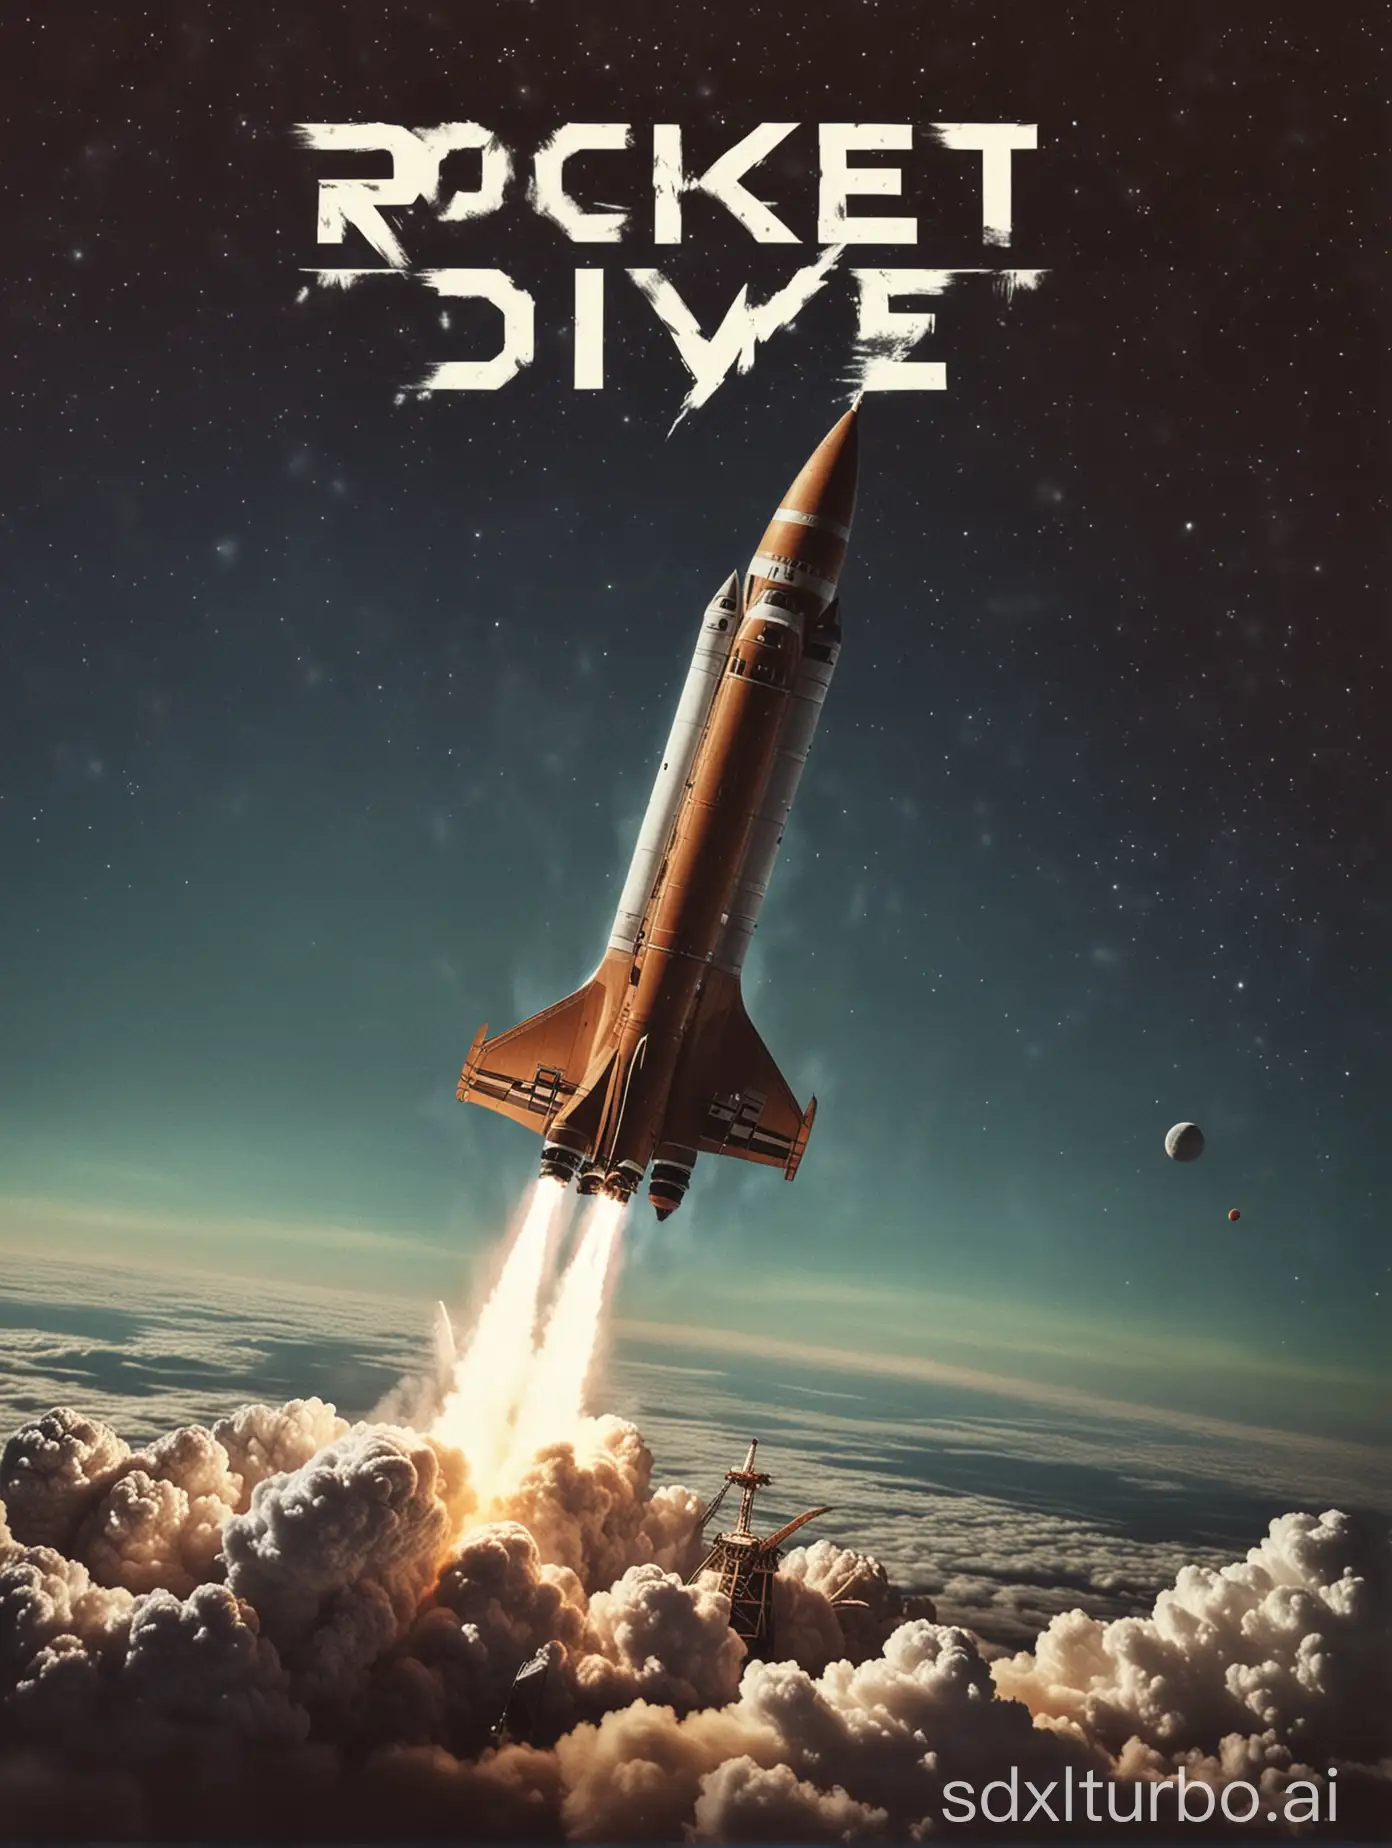 一个名叫"Rocket Dive"的摇滚乐队的歌单